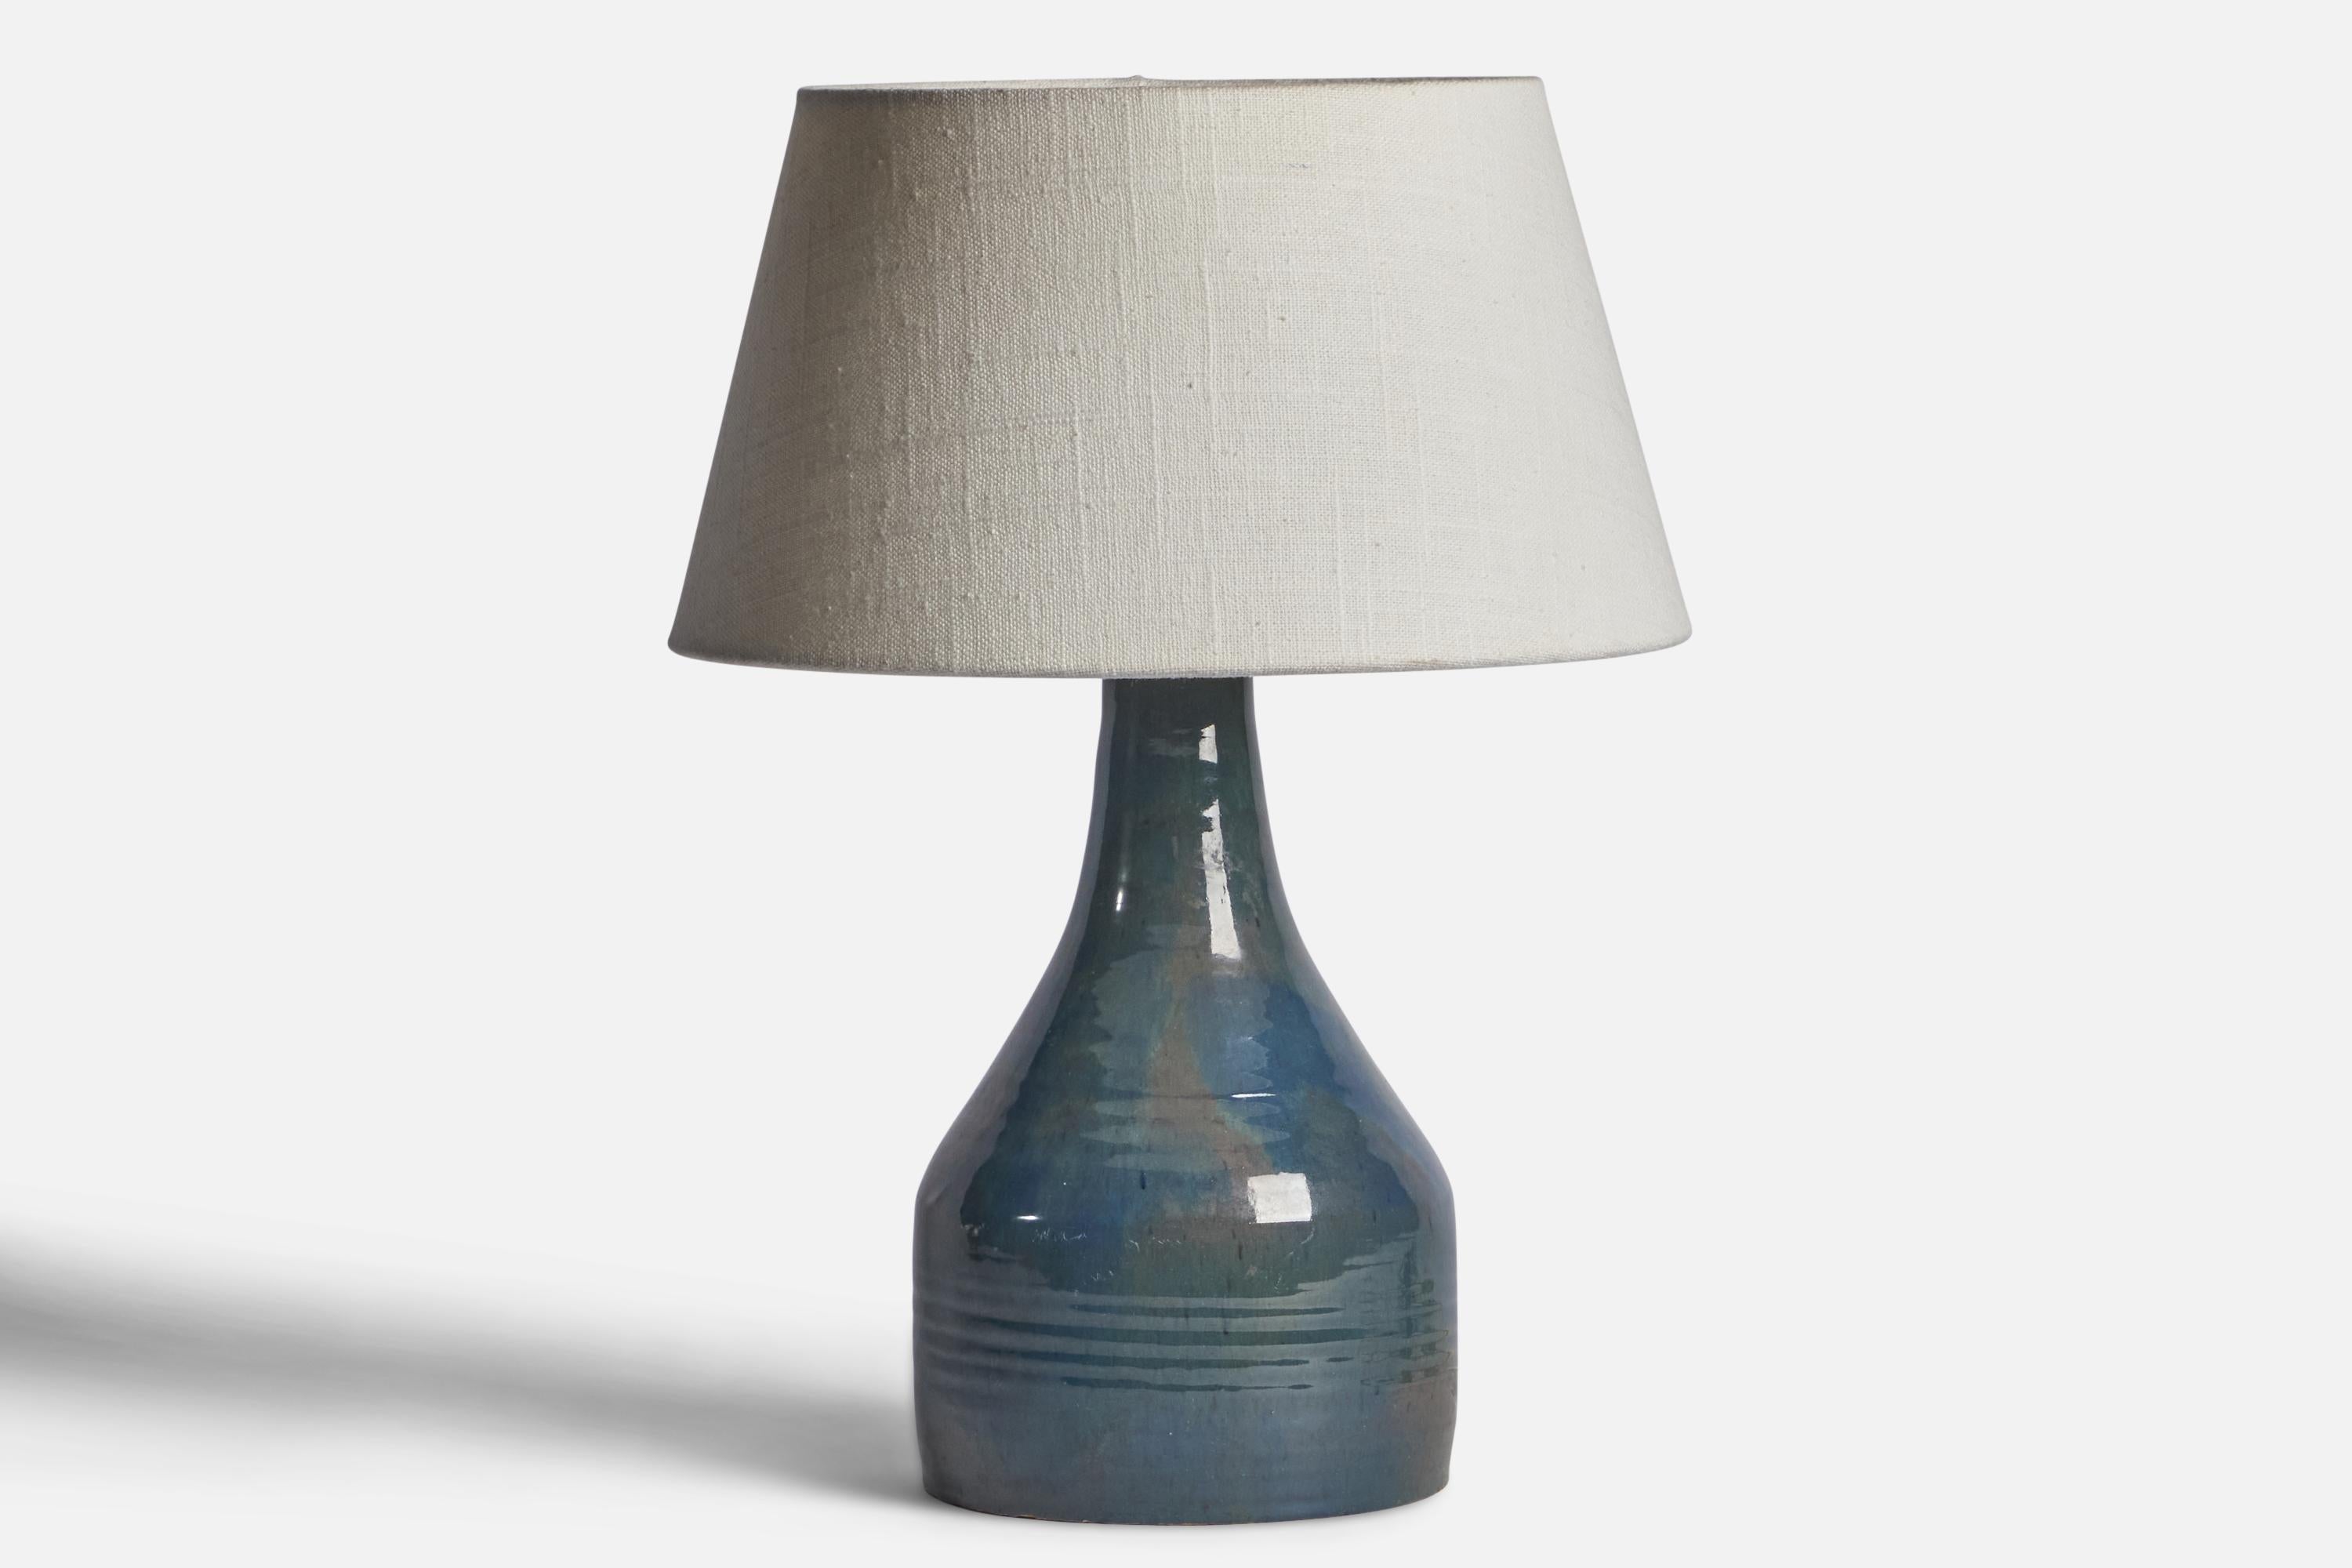 Lampe de table en céramique incisée à glaçure bleue, conçue et produite en Suède, années 1960.

Dimensions de la lampe (pouces) : 10.65